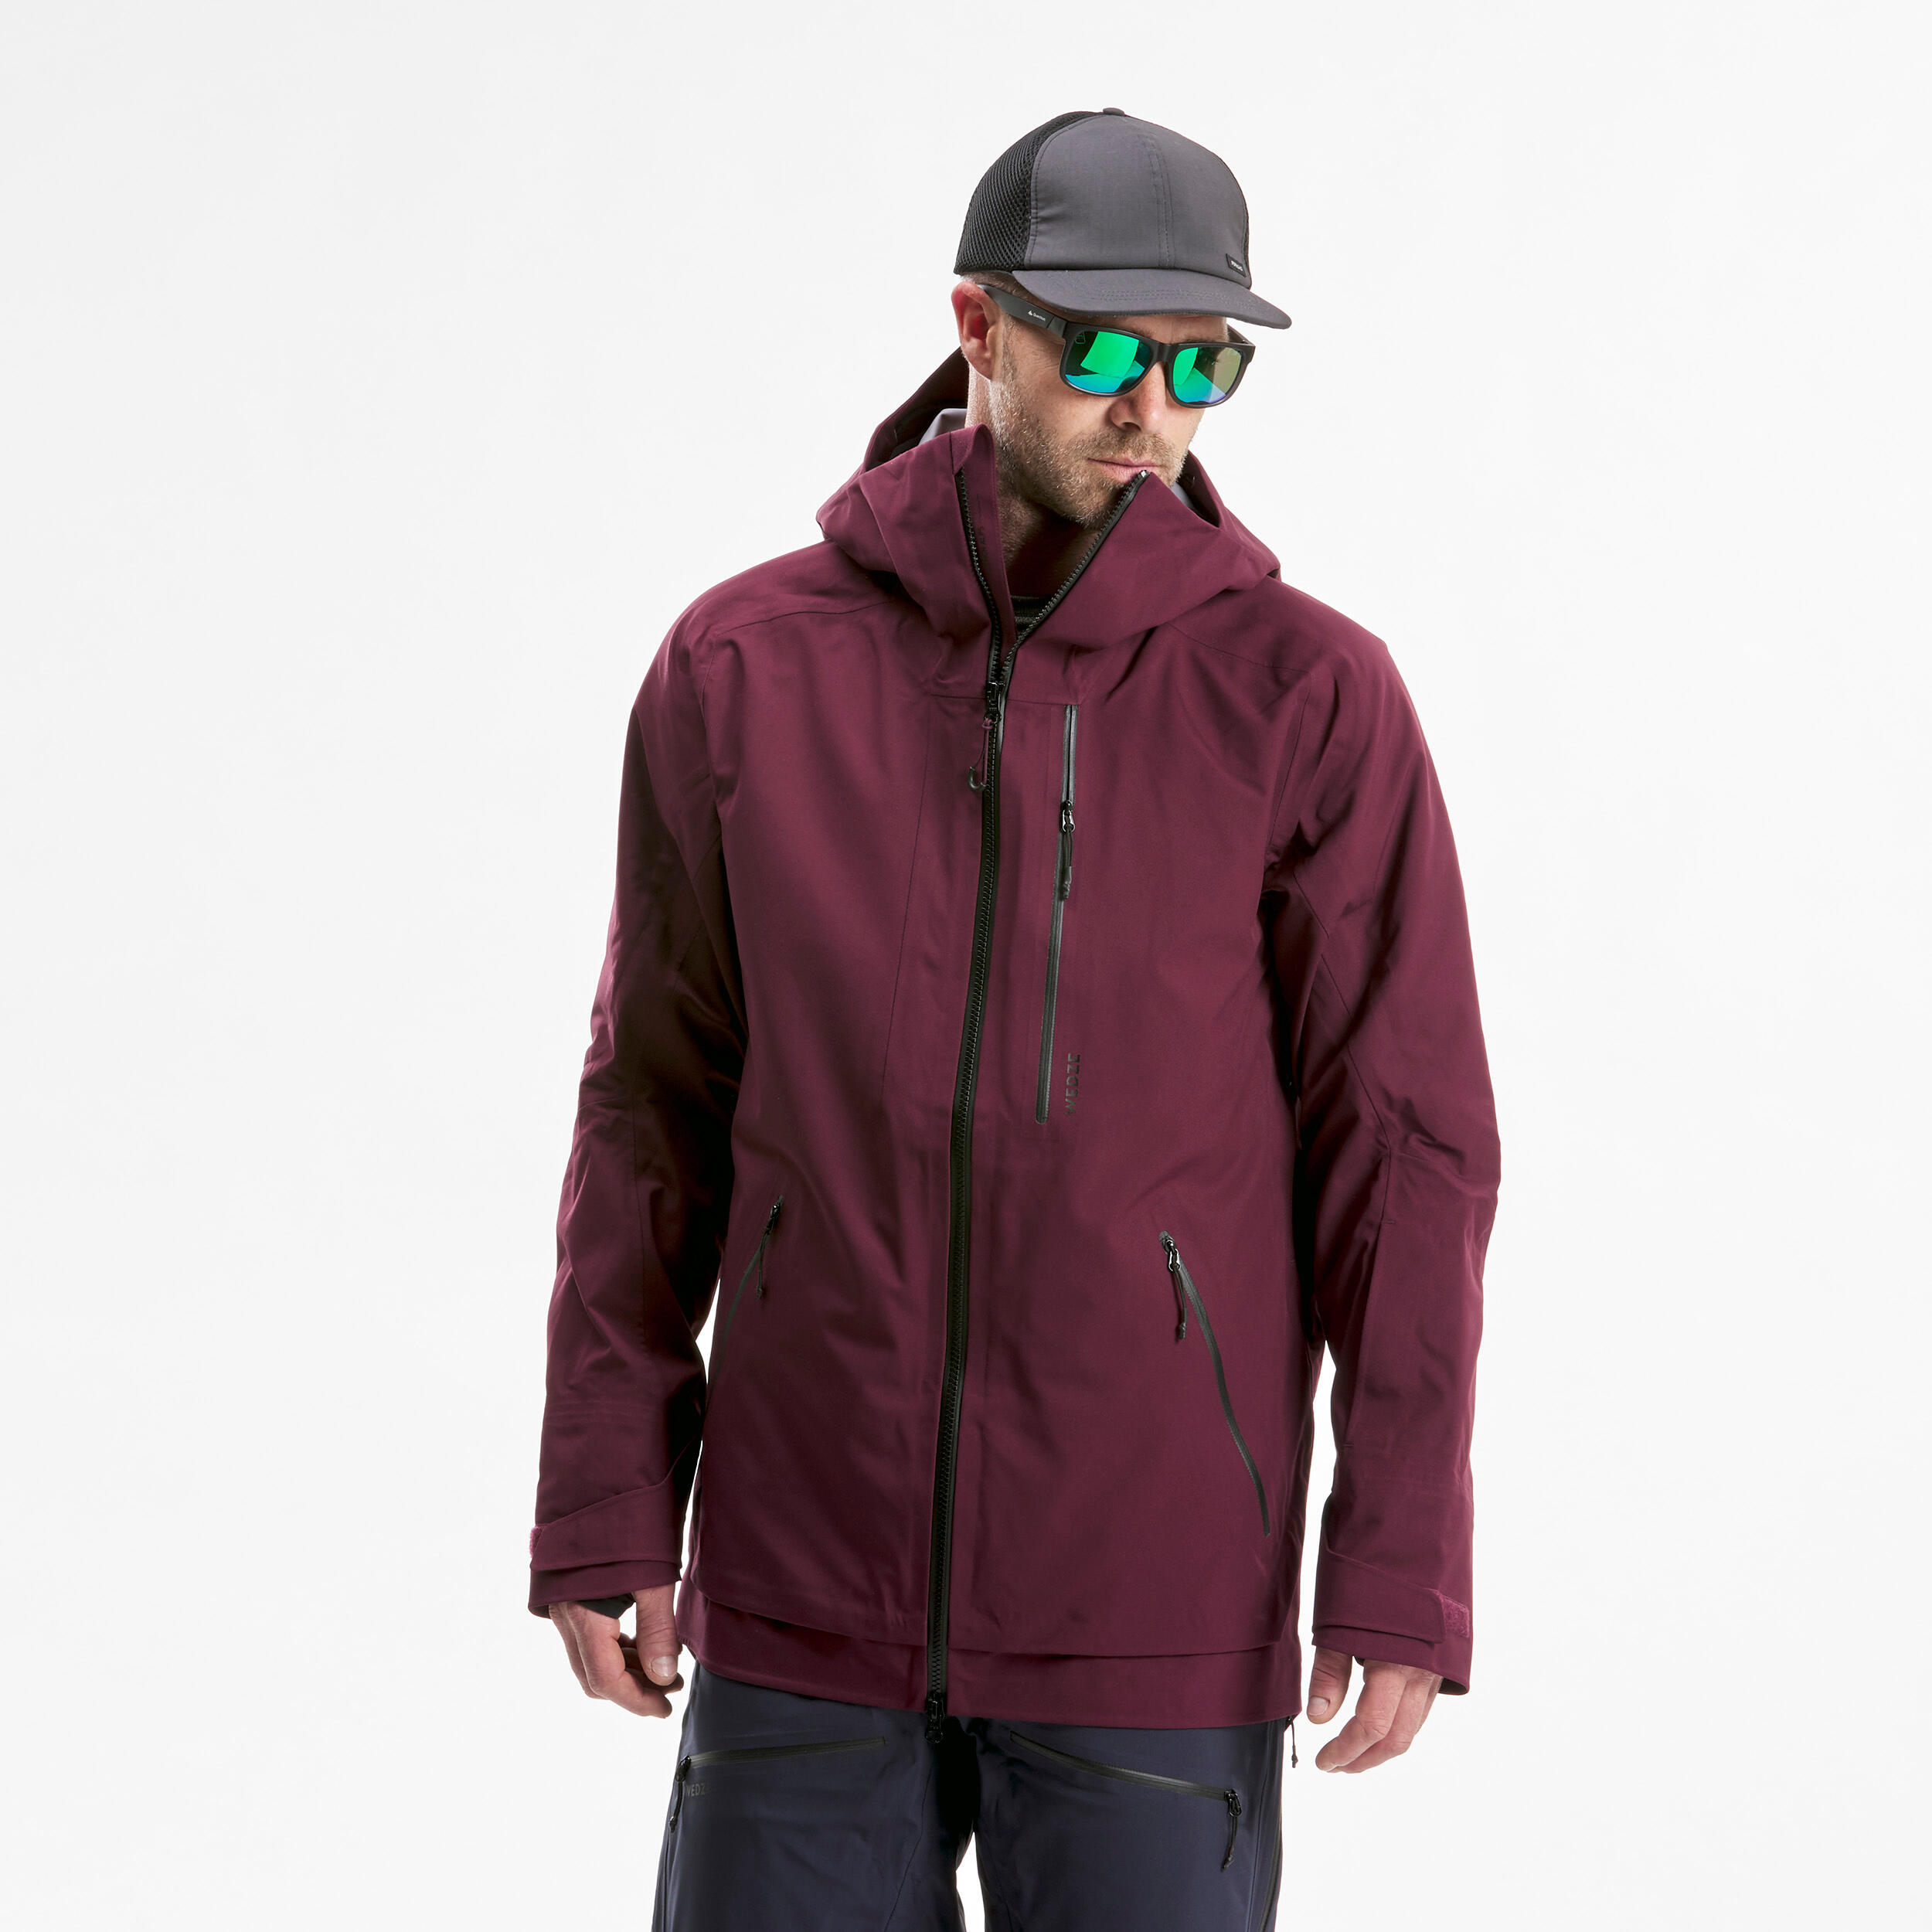 Men's Ski Jacket - FR500 - Bordeaux 4/15